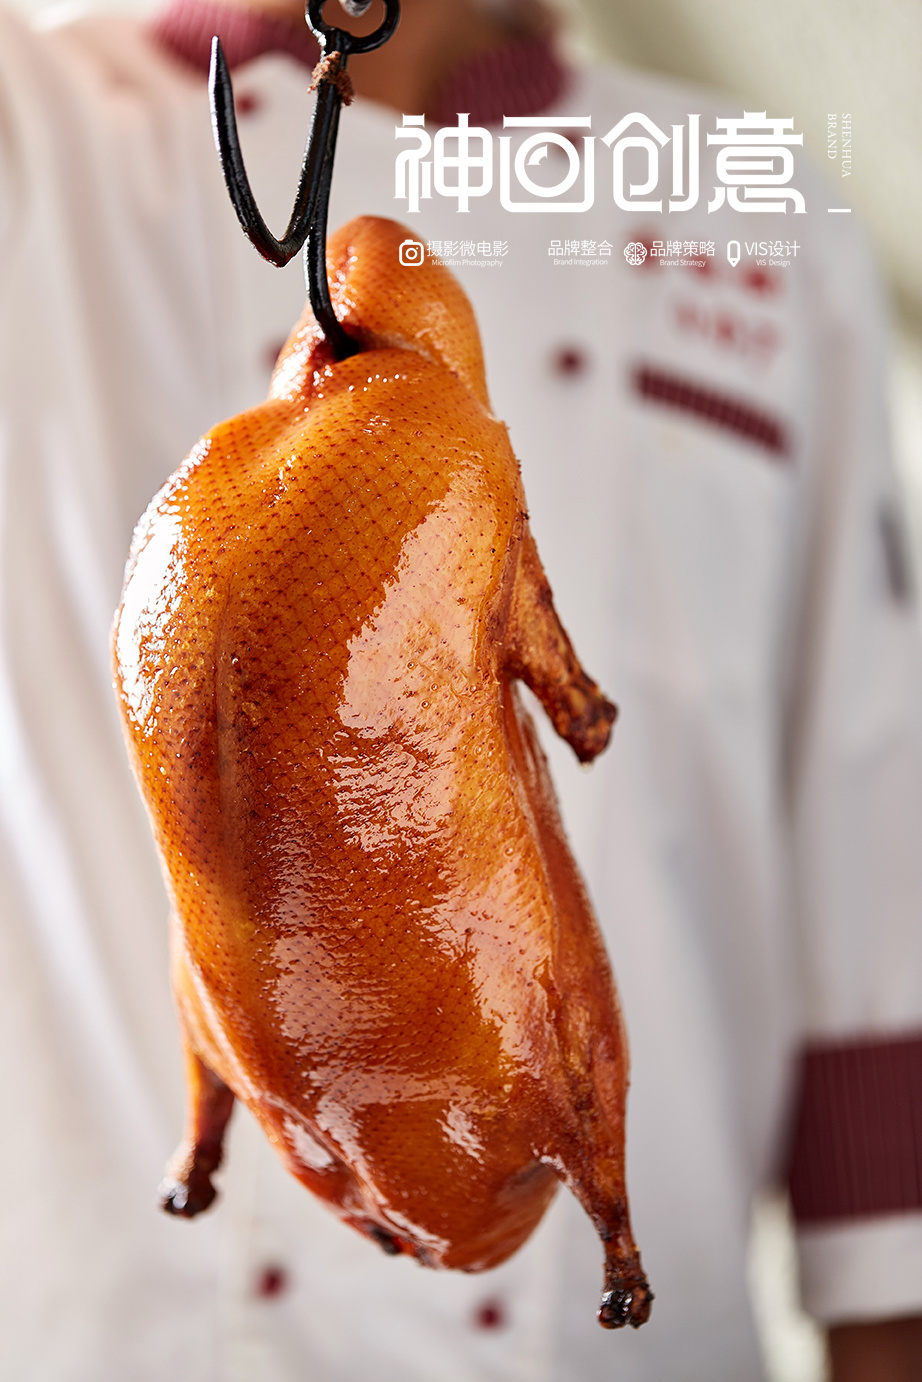 北京烤鸭花式摆盘图片